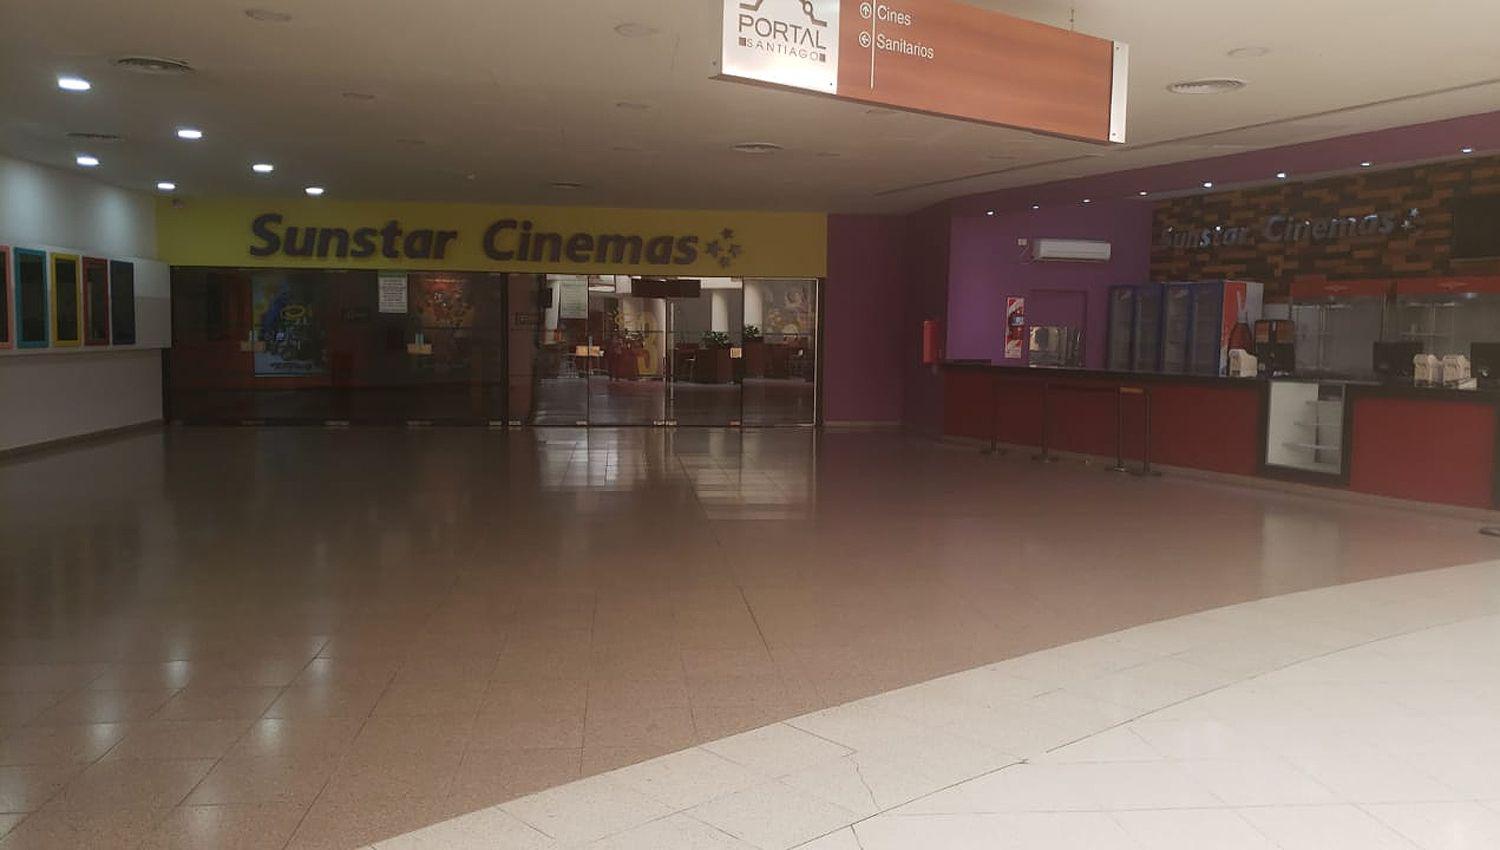 Sunstar Cinemas abriraacute sus puertas con siete peliacuteculas en cuatro de sus cinco salas